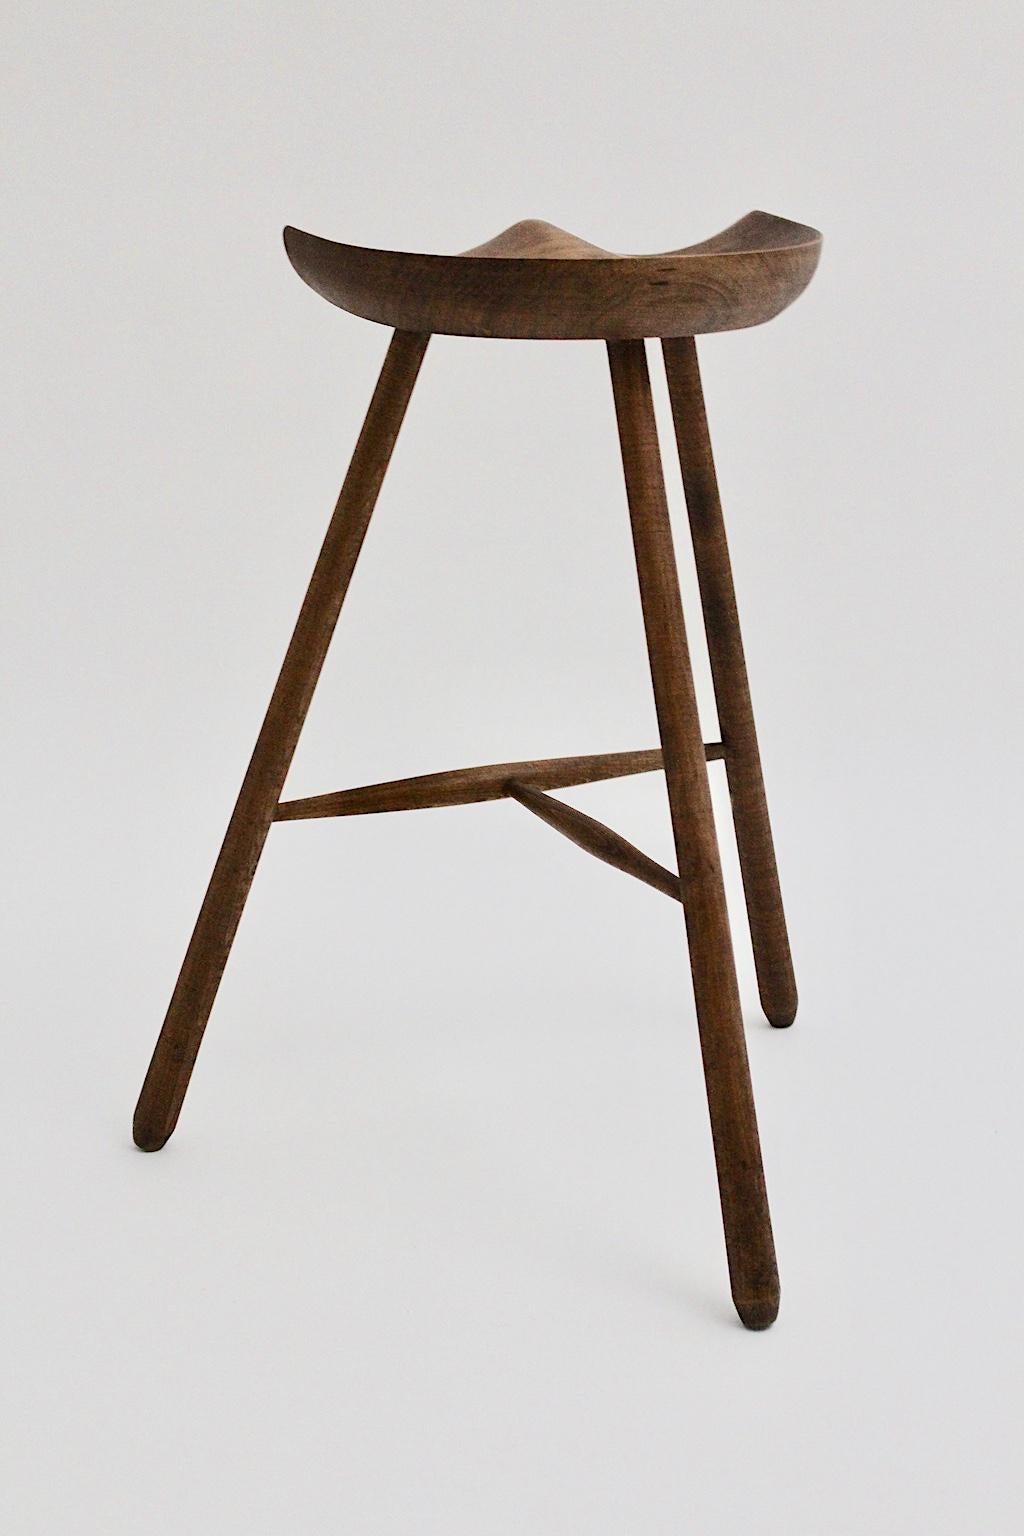 Scandinavian Modern Vintage Brown Teak Stool by Arne Hovmand-Olsen 1960s Denmark For Sale 3